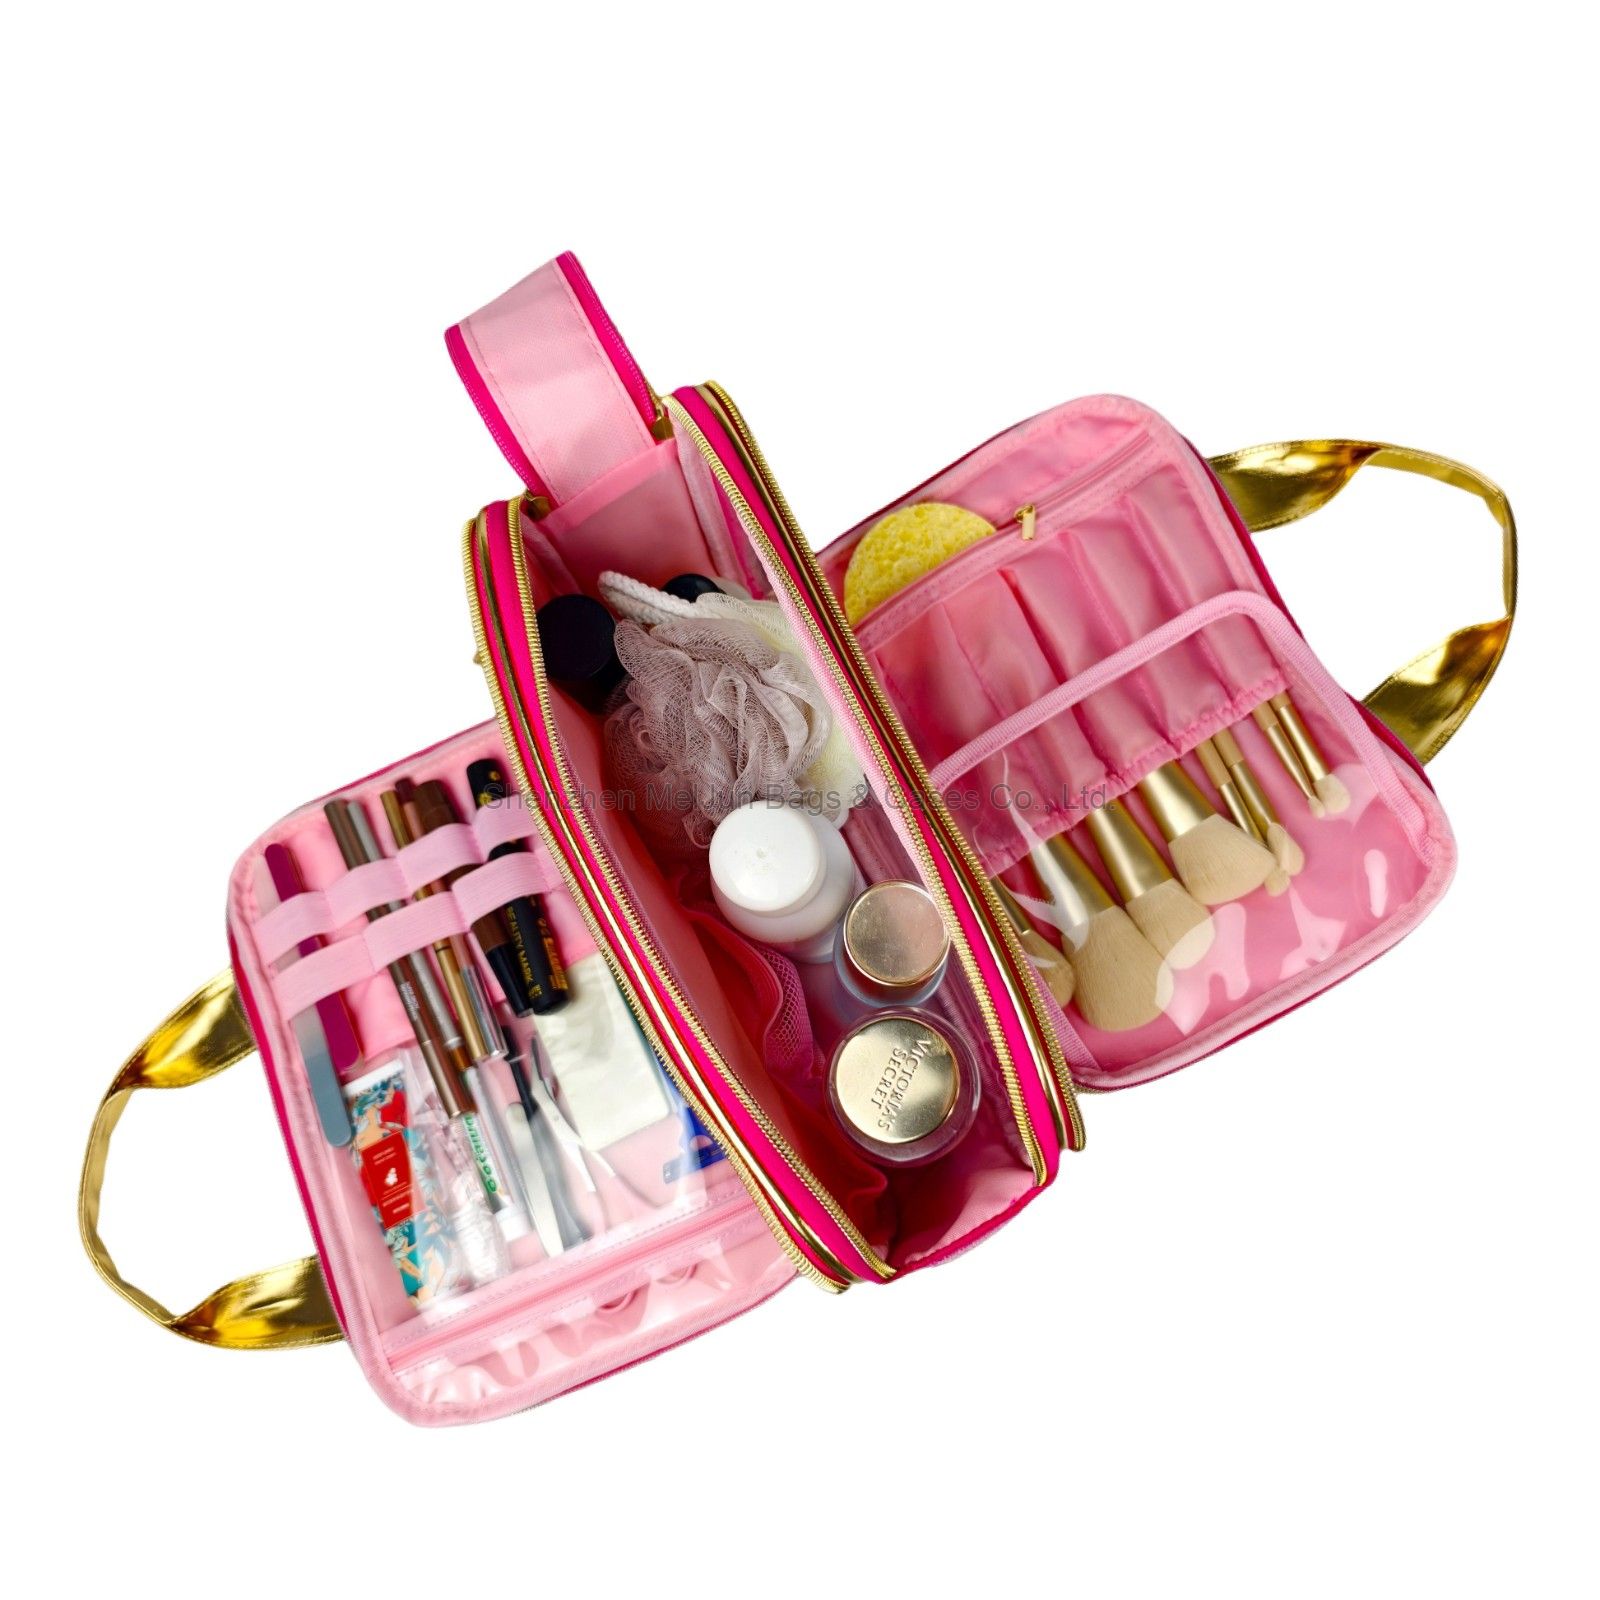 MEL JUN Bag for skin care products New PU Makeup bag Portable makeup storage bag Travel portable makeup bag